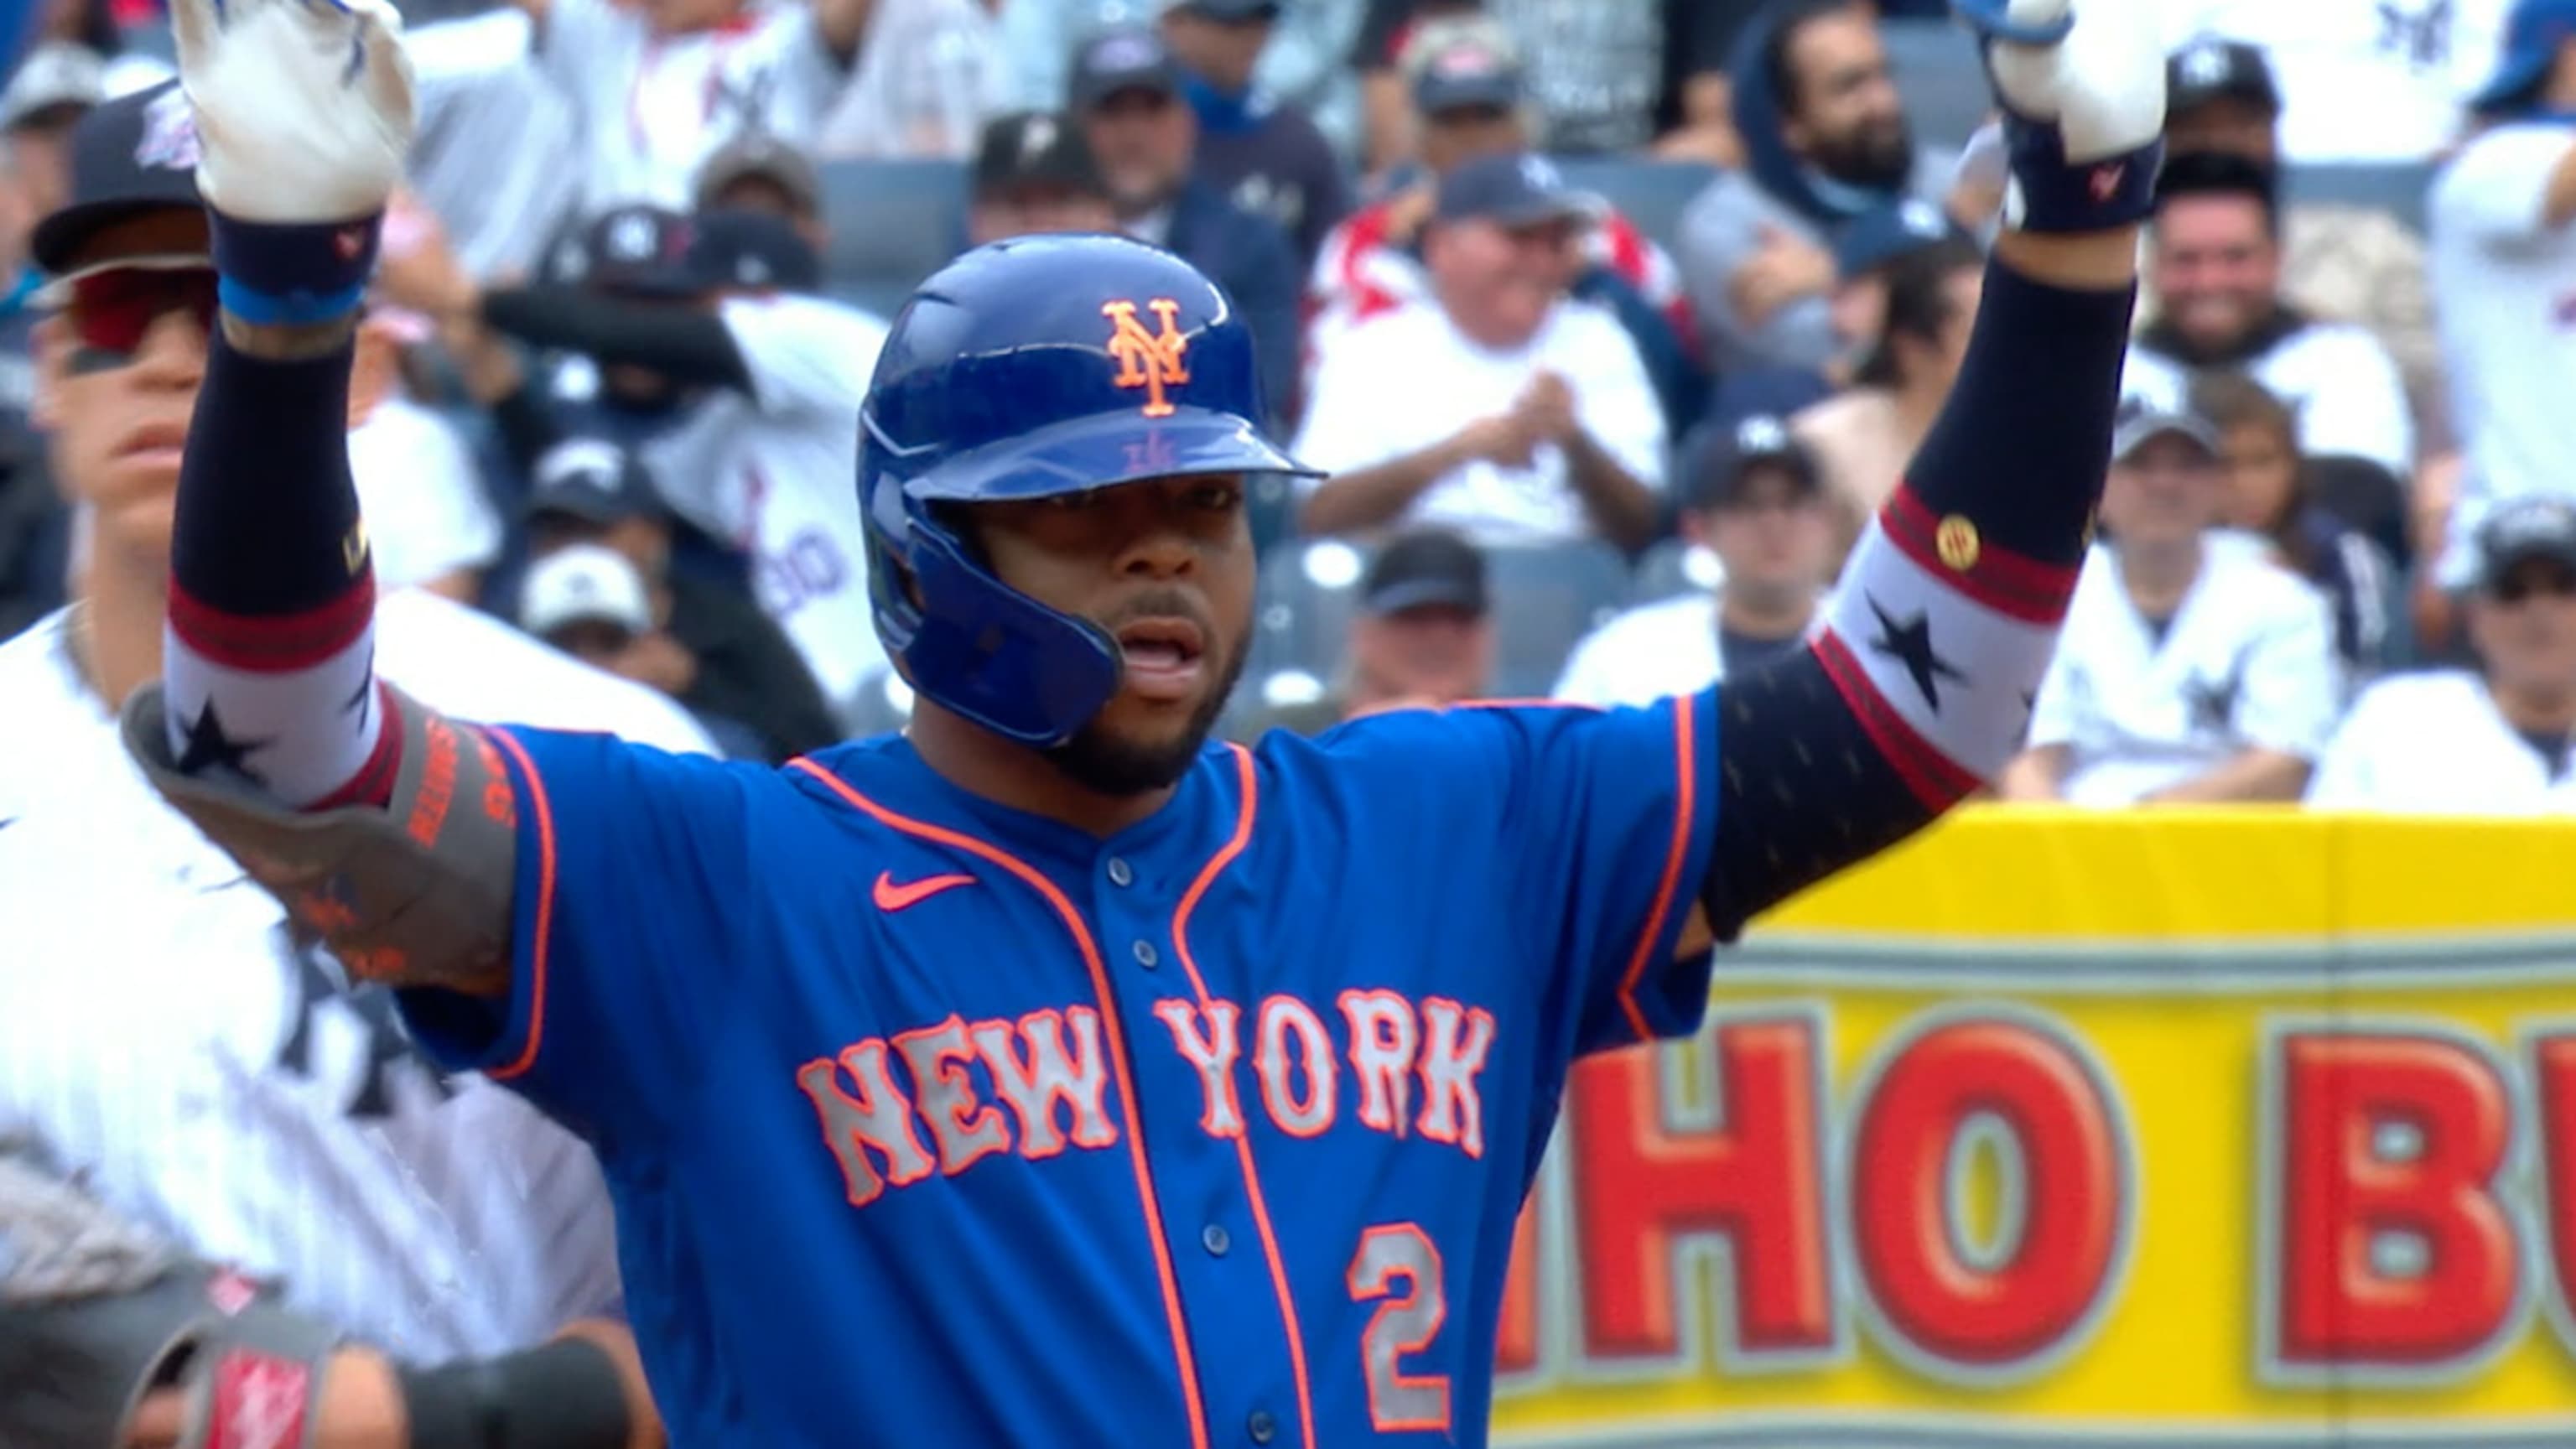 New York Mets - #MetsWin! #LGM